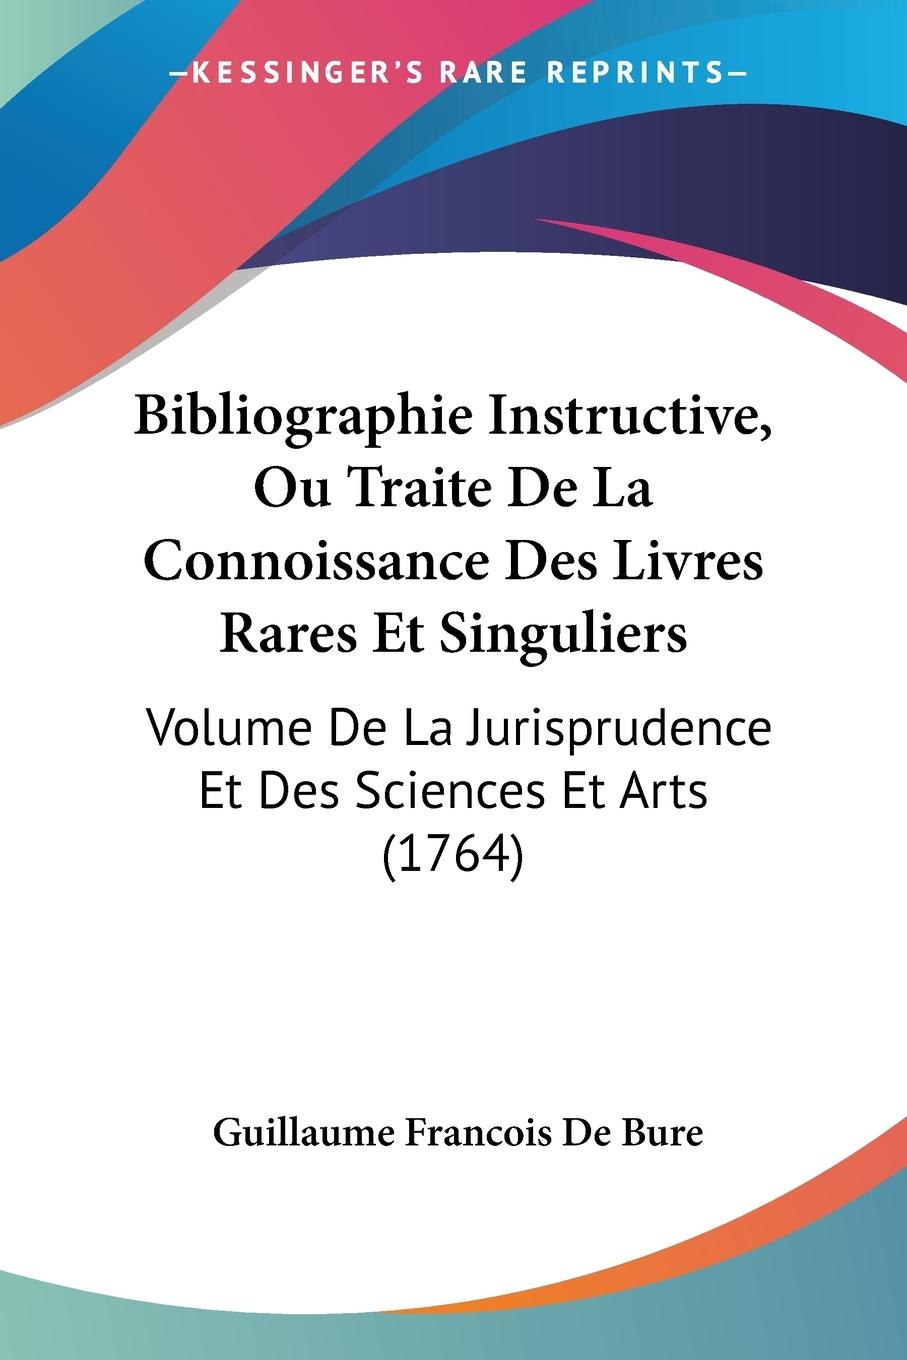 Bibliographie Instructive, Ou Traite De La Connoissance Des Livres Rares Et Singuliers - De Bure, Guillaume Francois